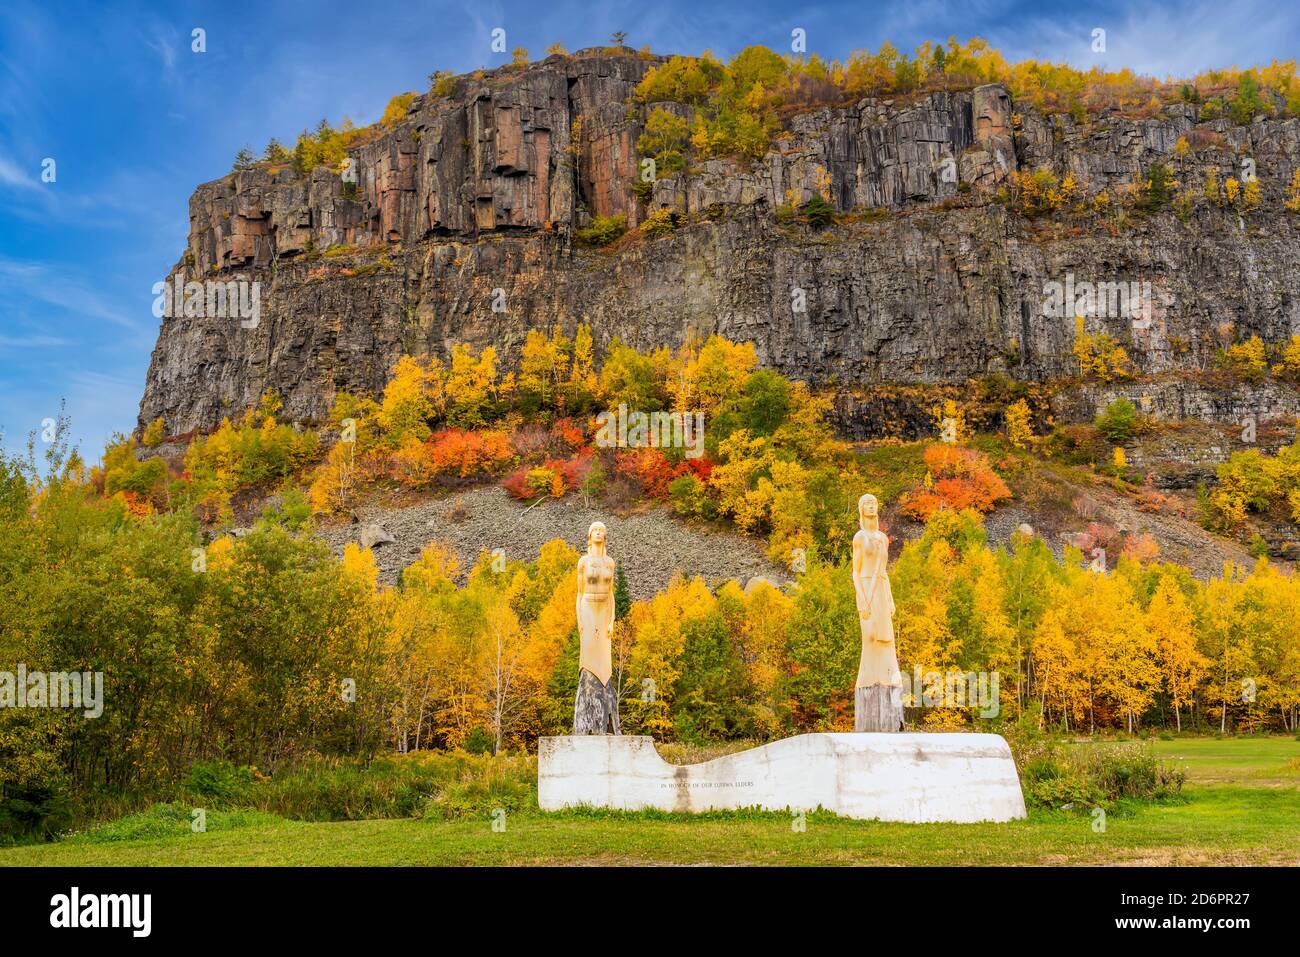 Das Ojibway Elder Monument und Herbstfärbung am Mount McKay Aussichtspunkt, Thunder Bay, Ontario, Kanada. Stockfoto